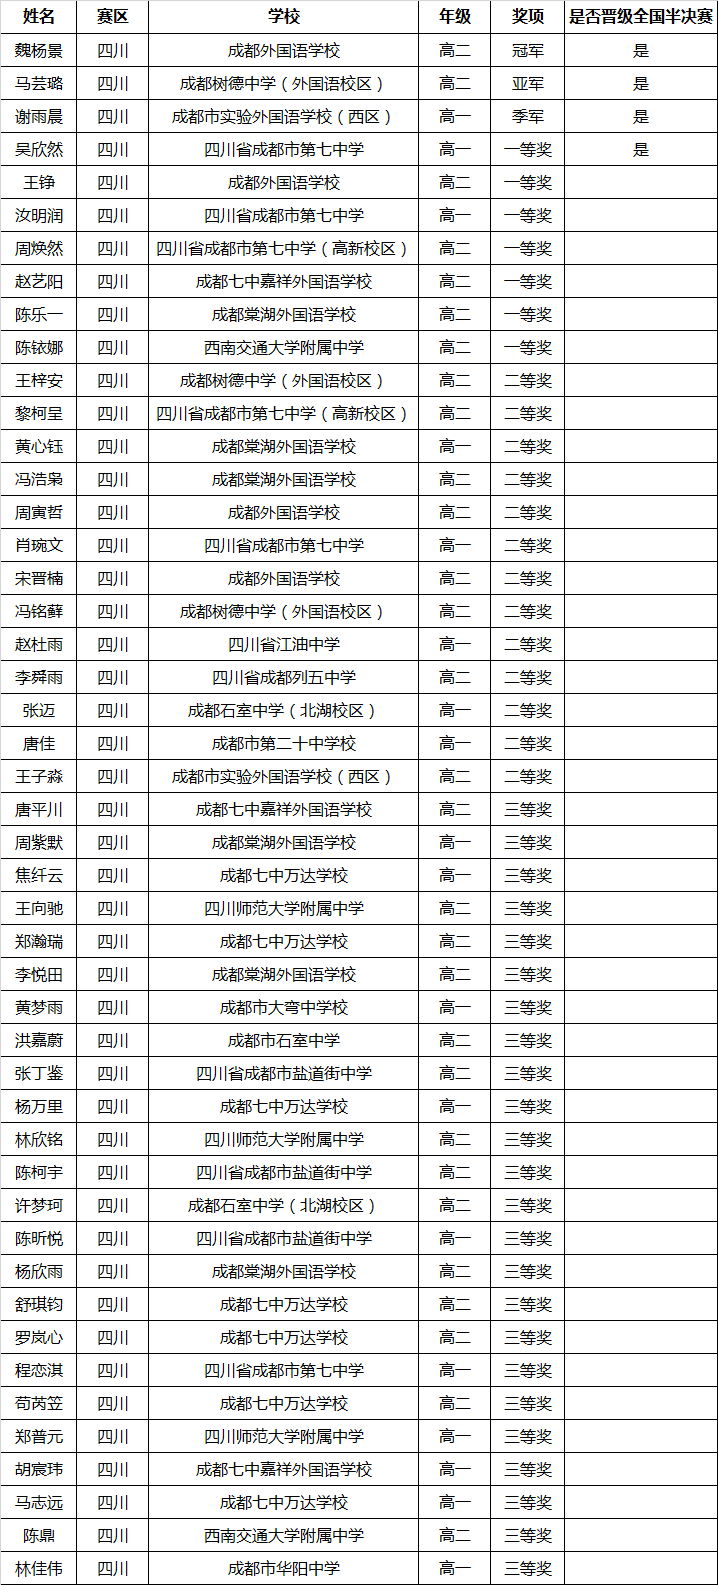 四川第18届中国日报社“21世纪杯”全国英语演讲比赛获奖名单